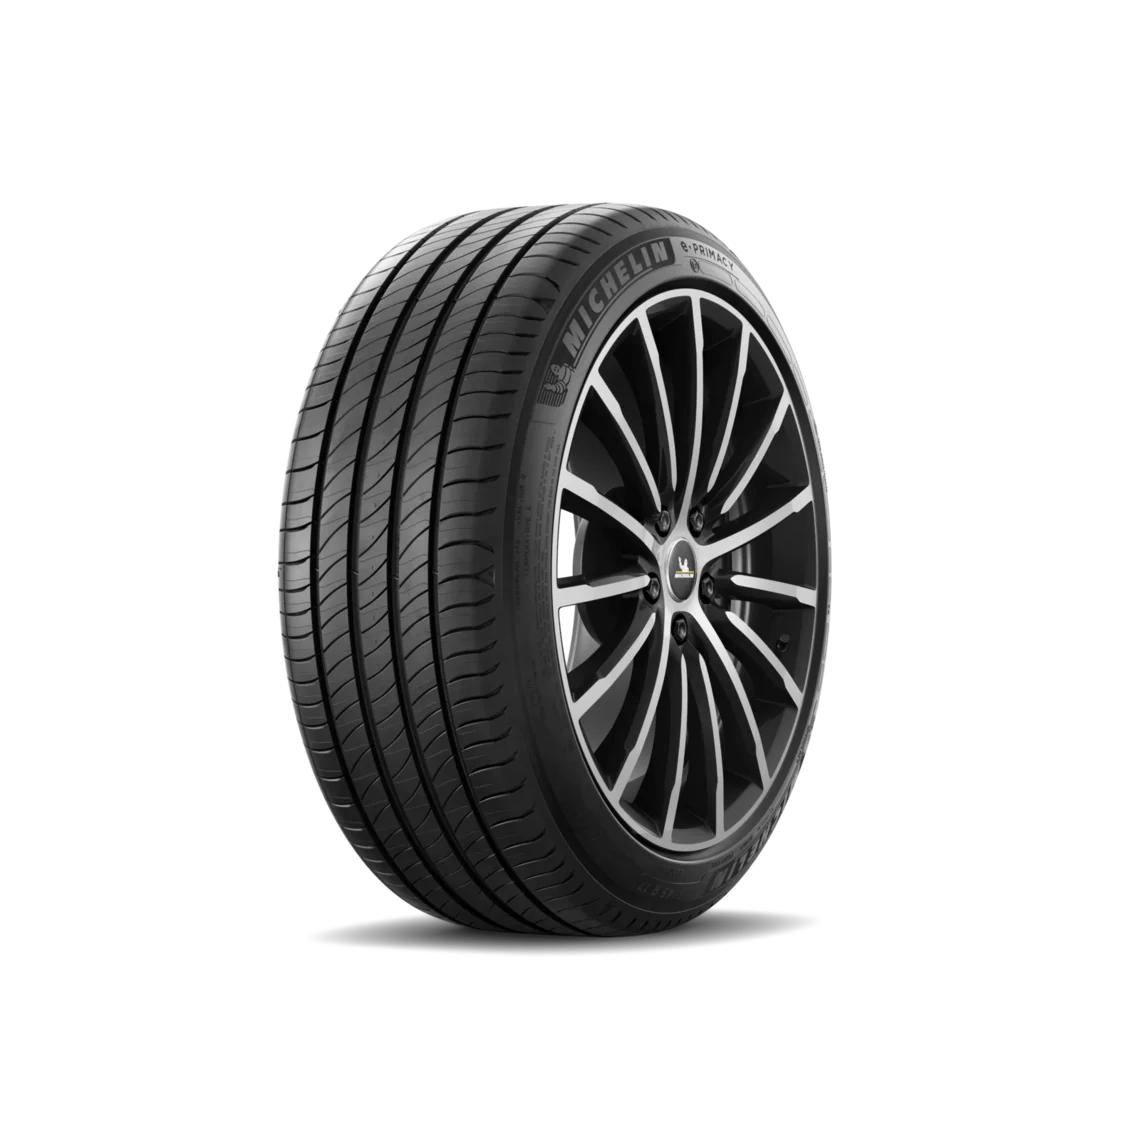 Michelin Michelin 205/55 R16 91V E PRIMACY pneumatici nuovi Estivo 